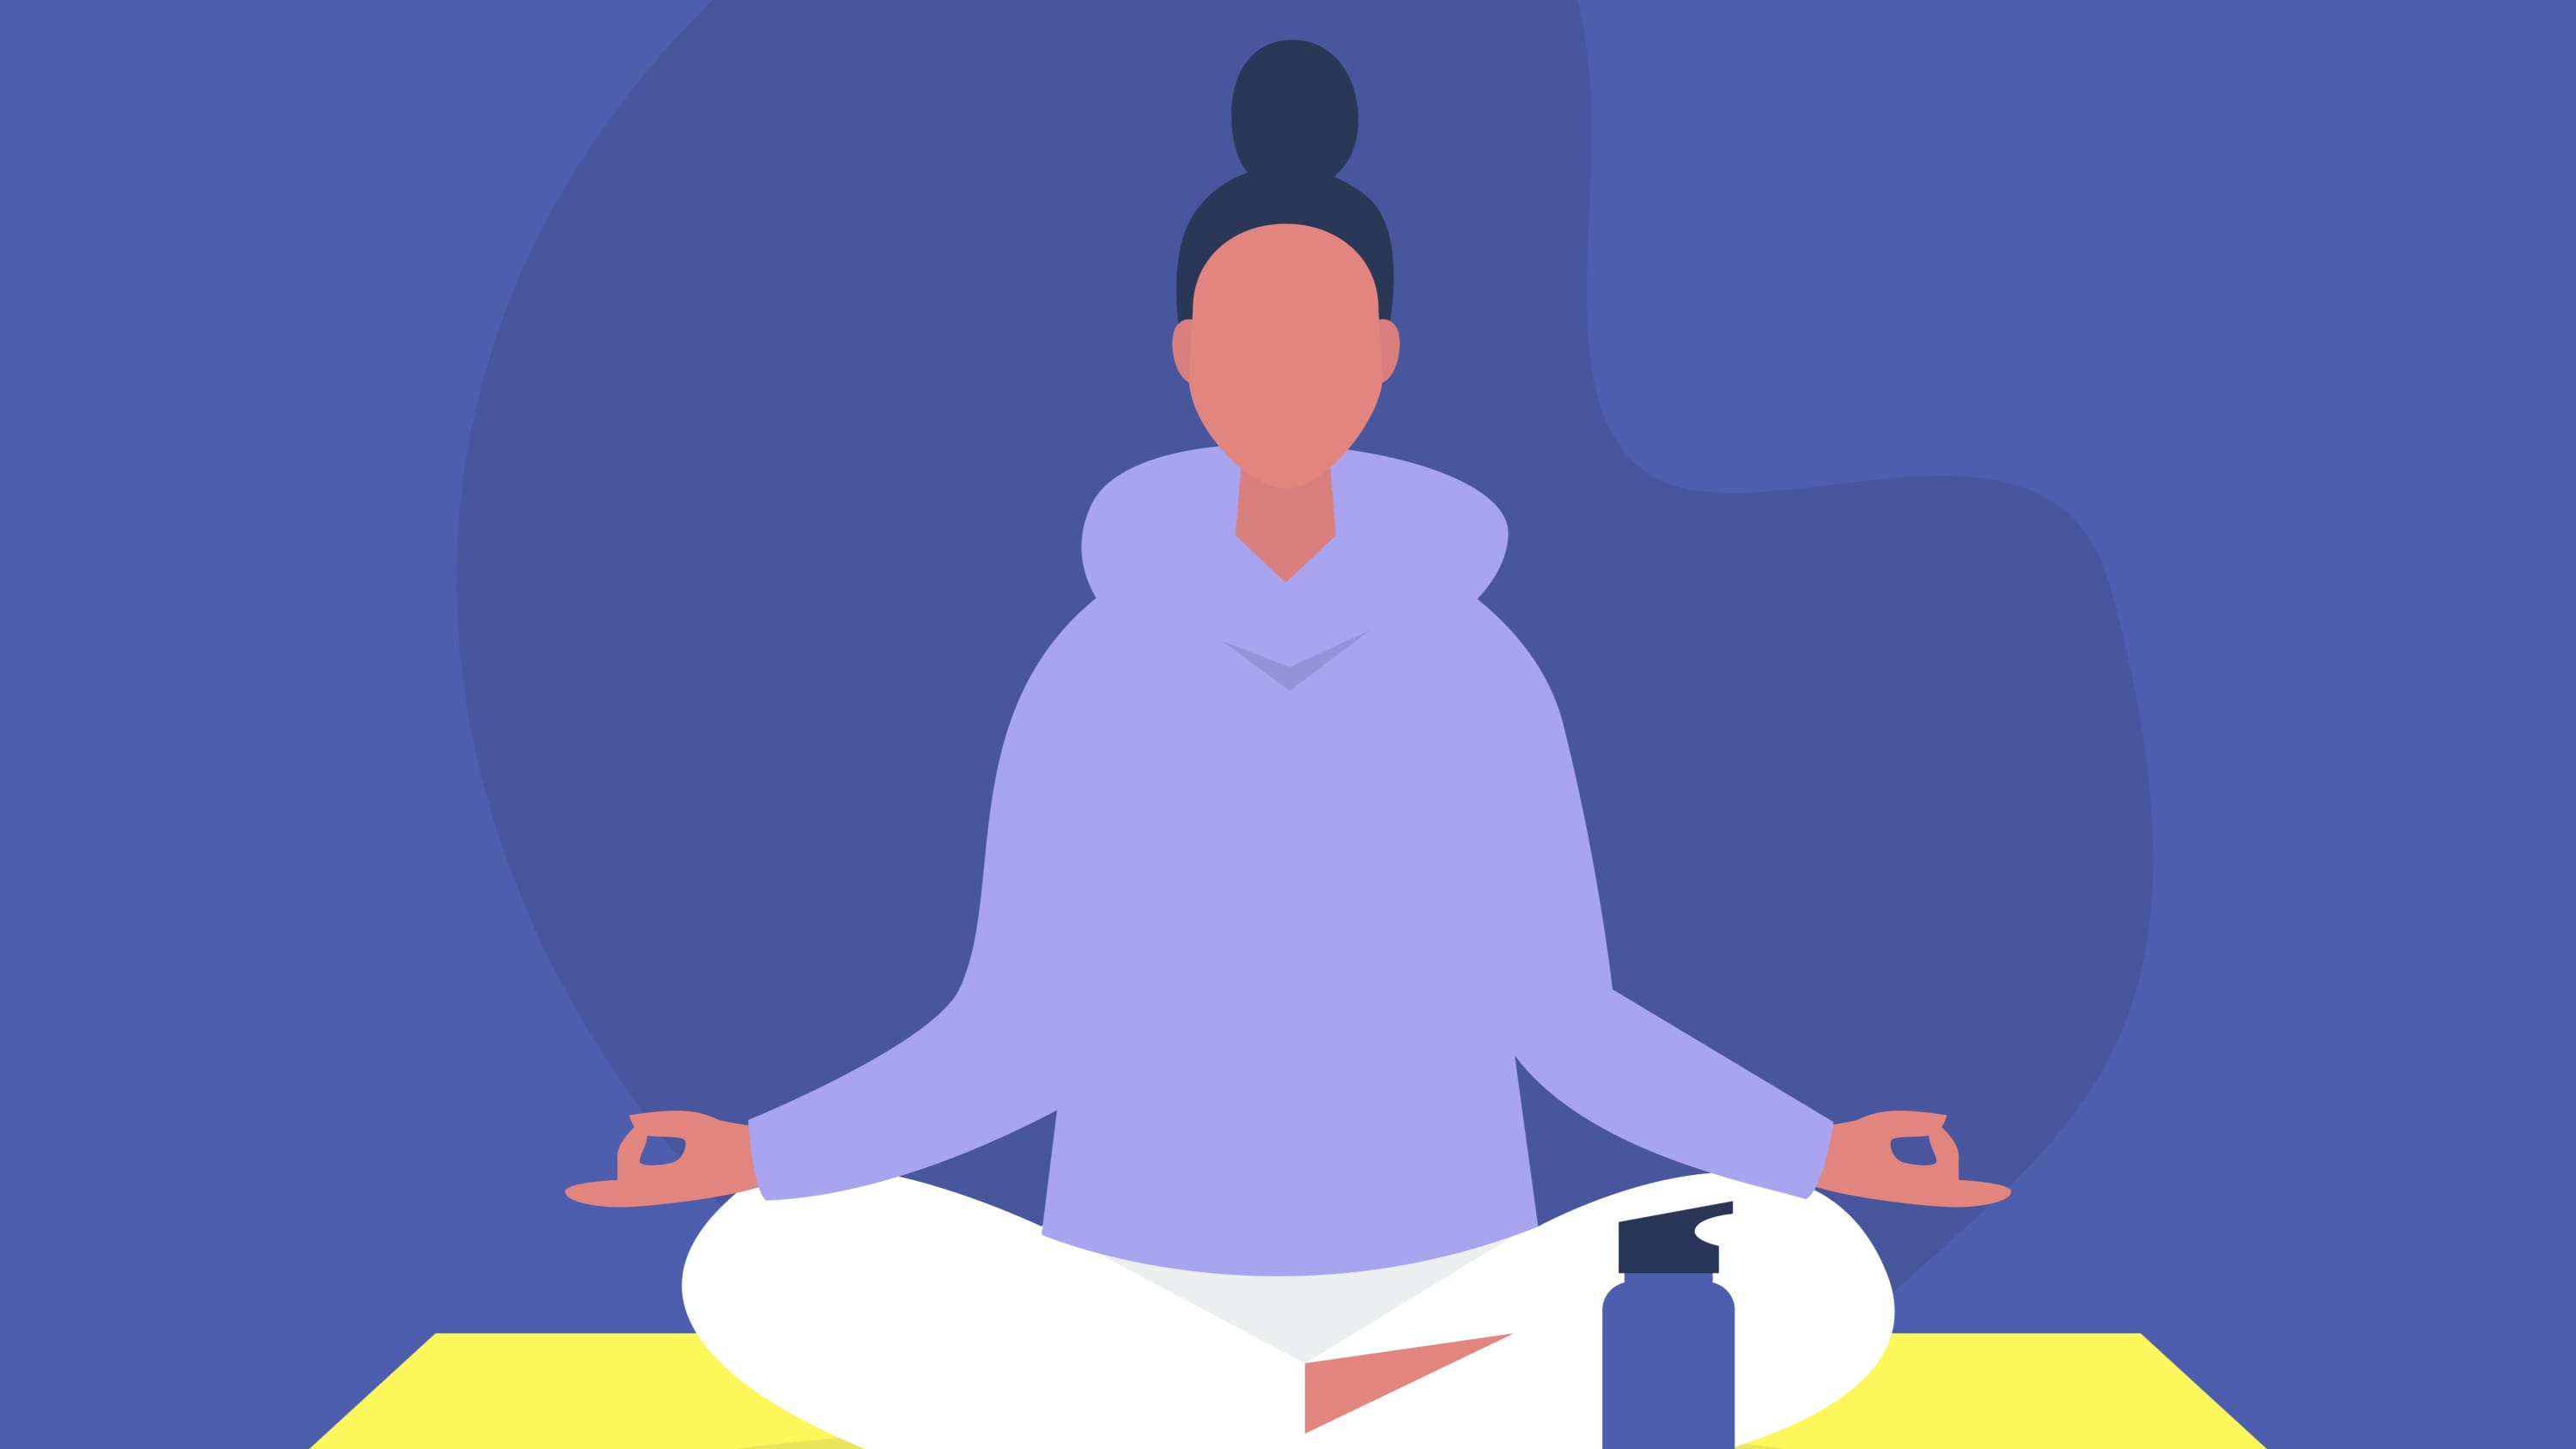 illustration of meditation